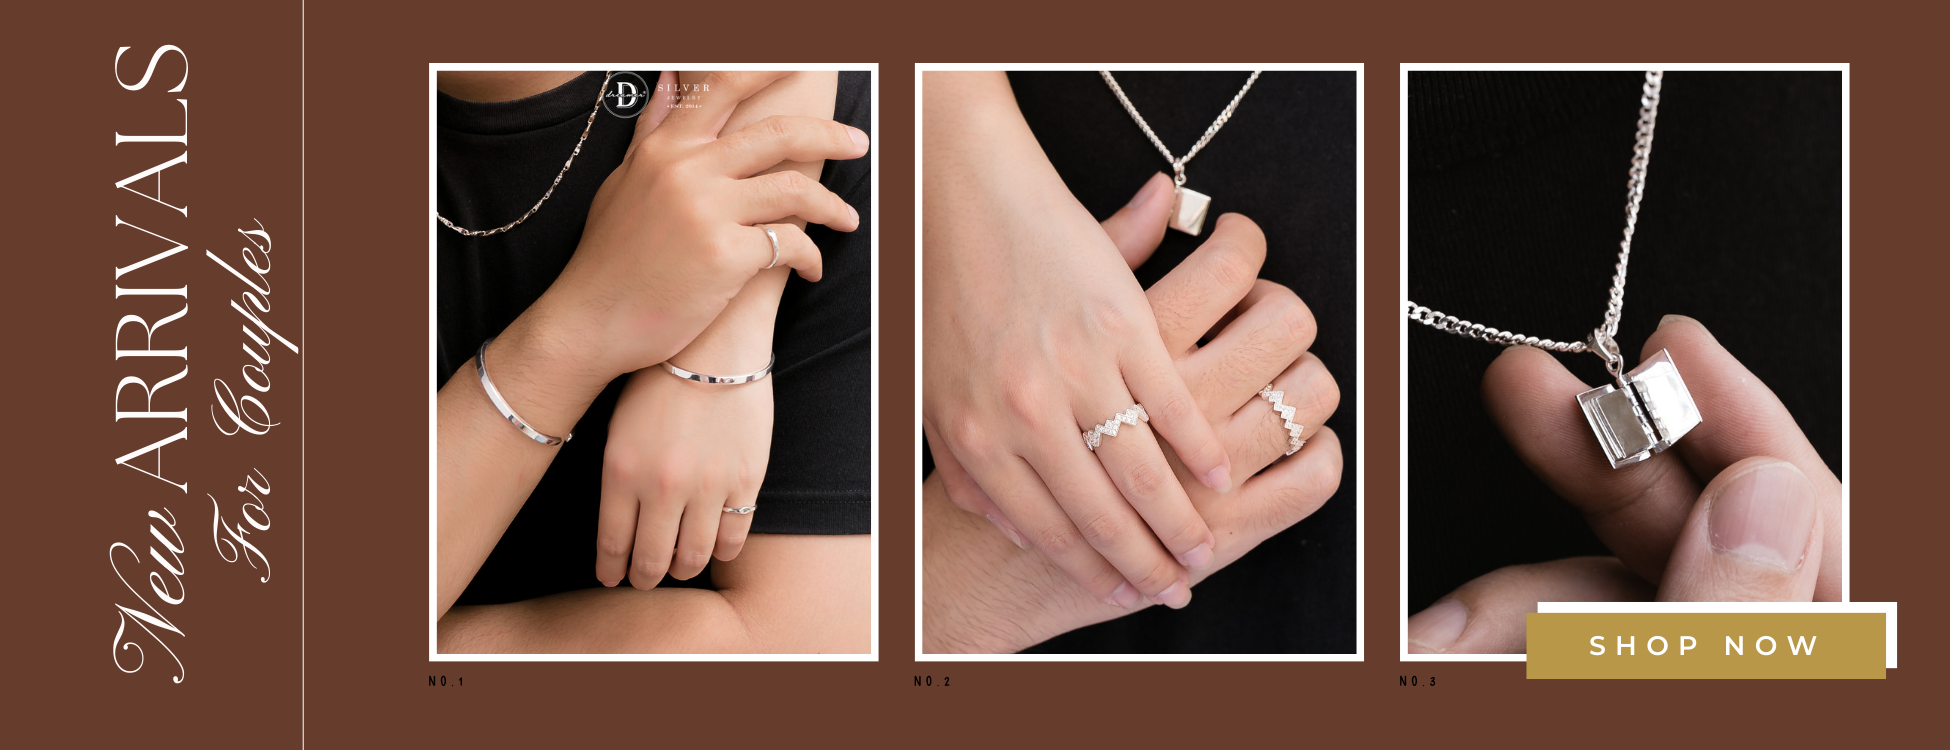 Trang Sức Dành Cho Các Cặp Đôi - Couples Jewelry